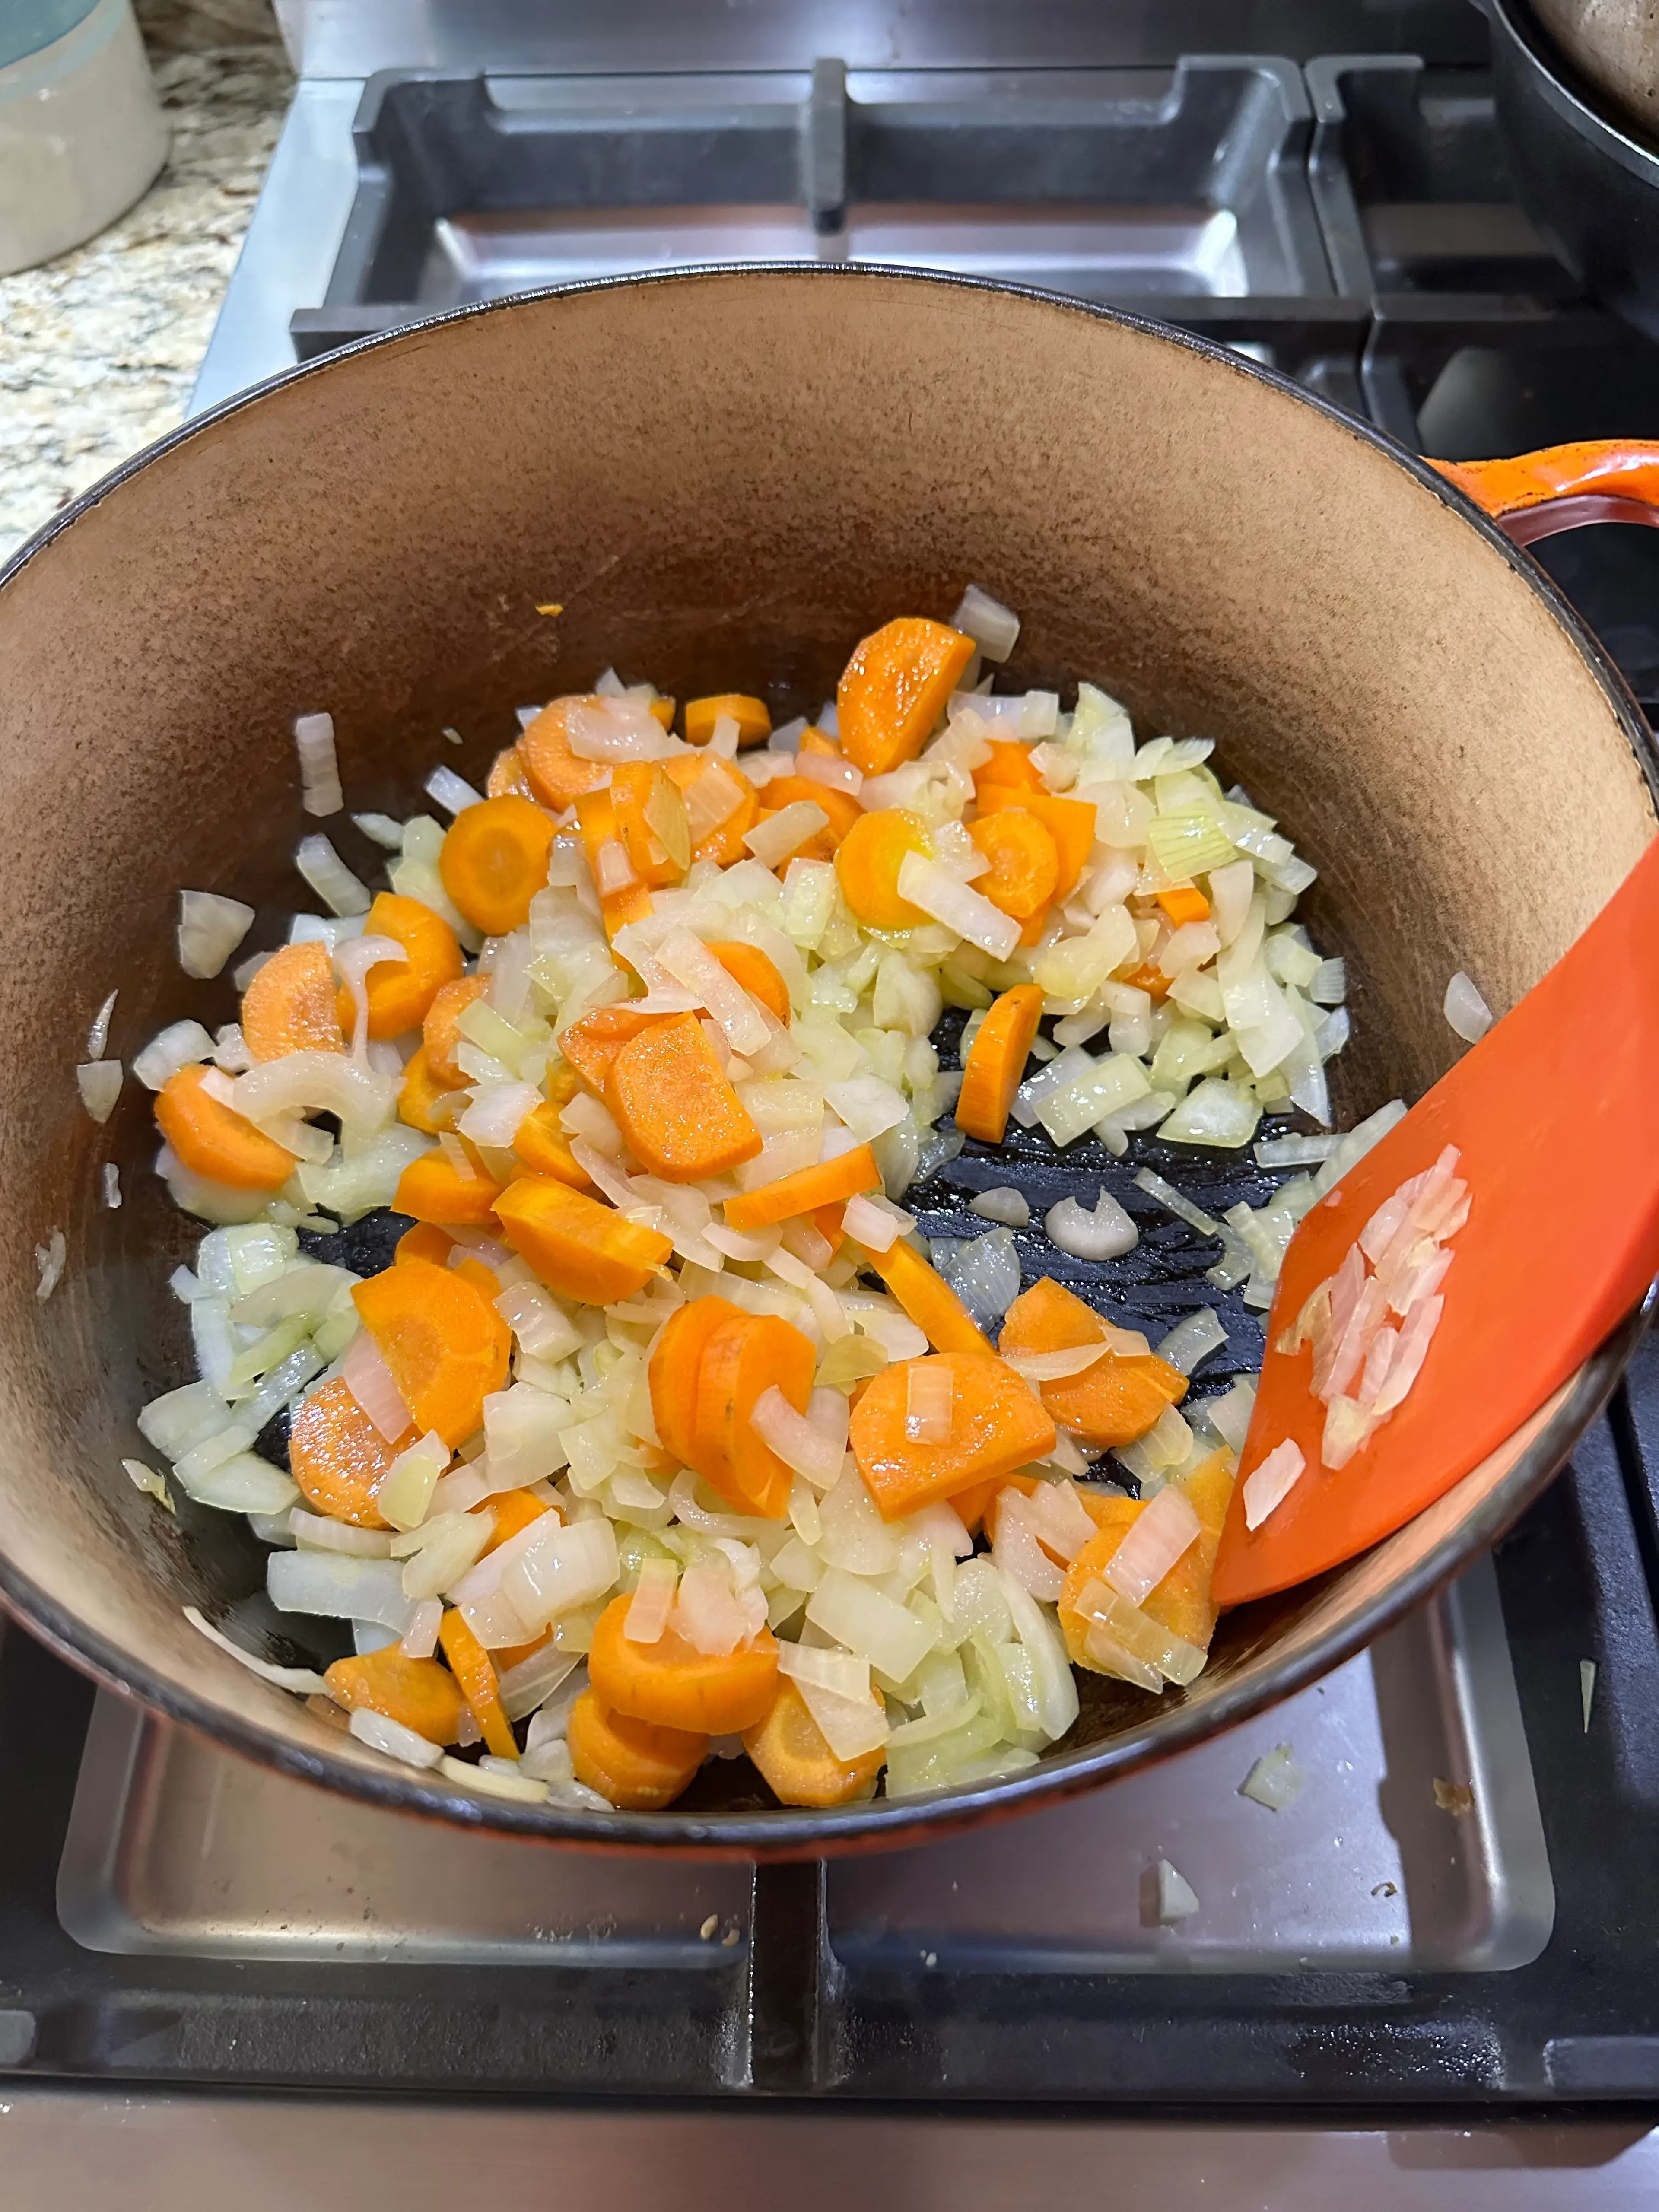 Decidí cocinar la cebolla y las zanahorias en aceite de oliva para darle más sabor, ya que las únicas especias que requería esta receta eran sal y hojas de laurel.